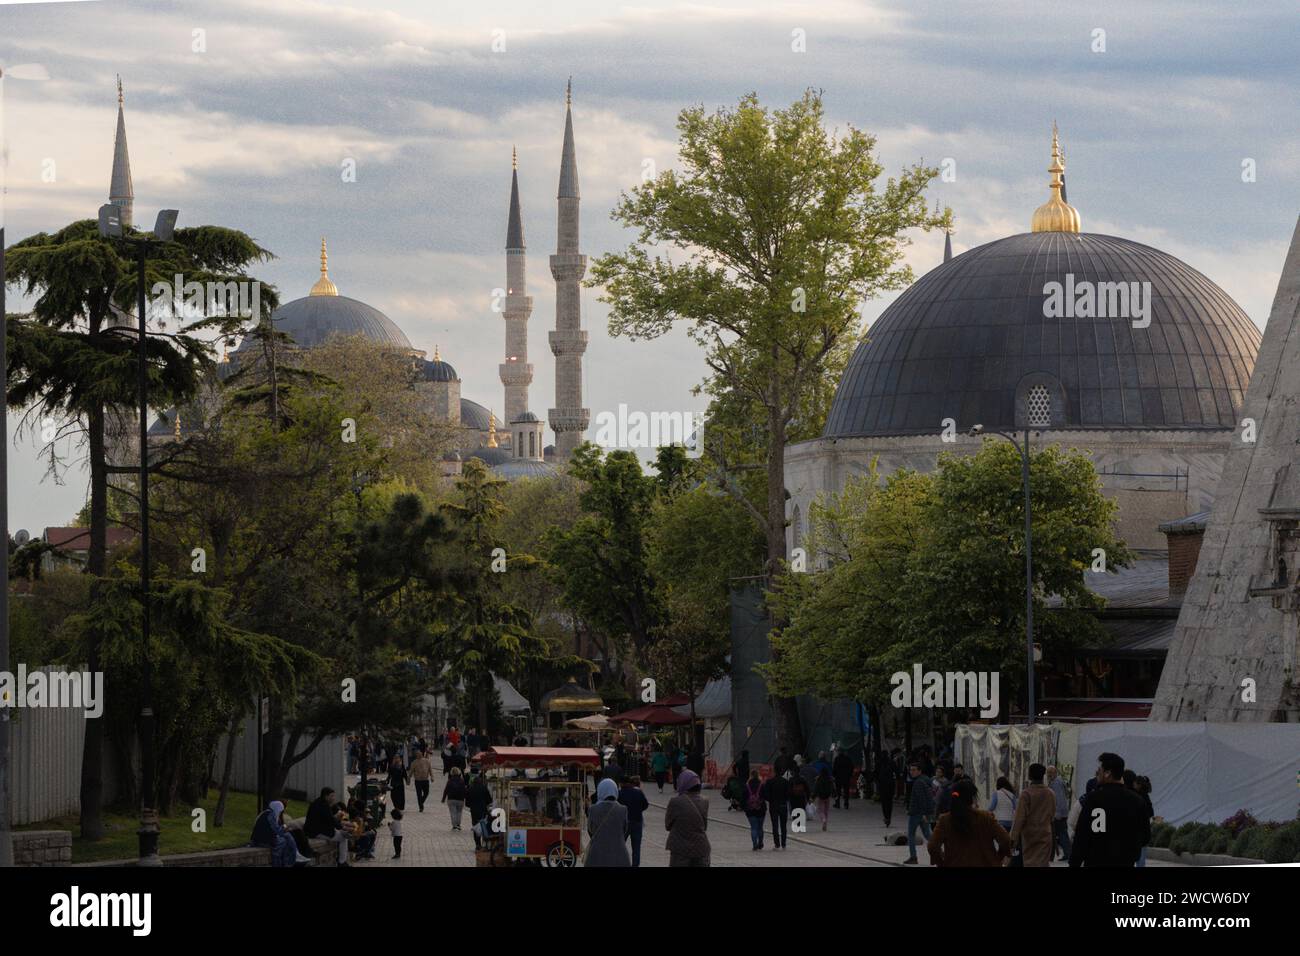 La Mosquée Bleue d'Istanbul, également connue sous le nom de Mosquée du Sultan Ahmed (Sultan Ahmet Camii), est une mosquée impériale historique de l'époque ottomane Banque D'Images